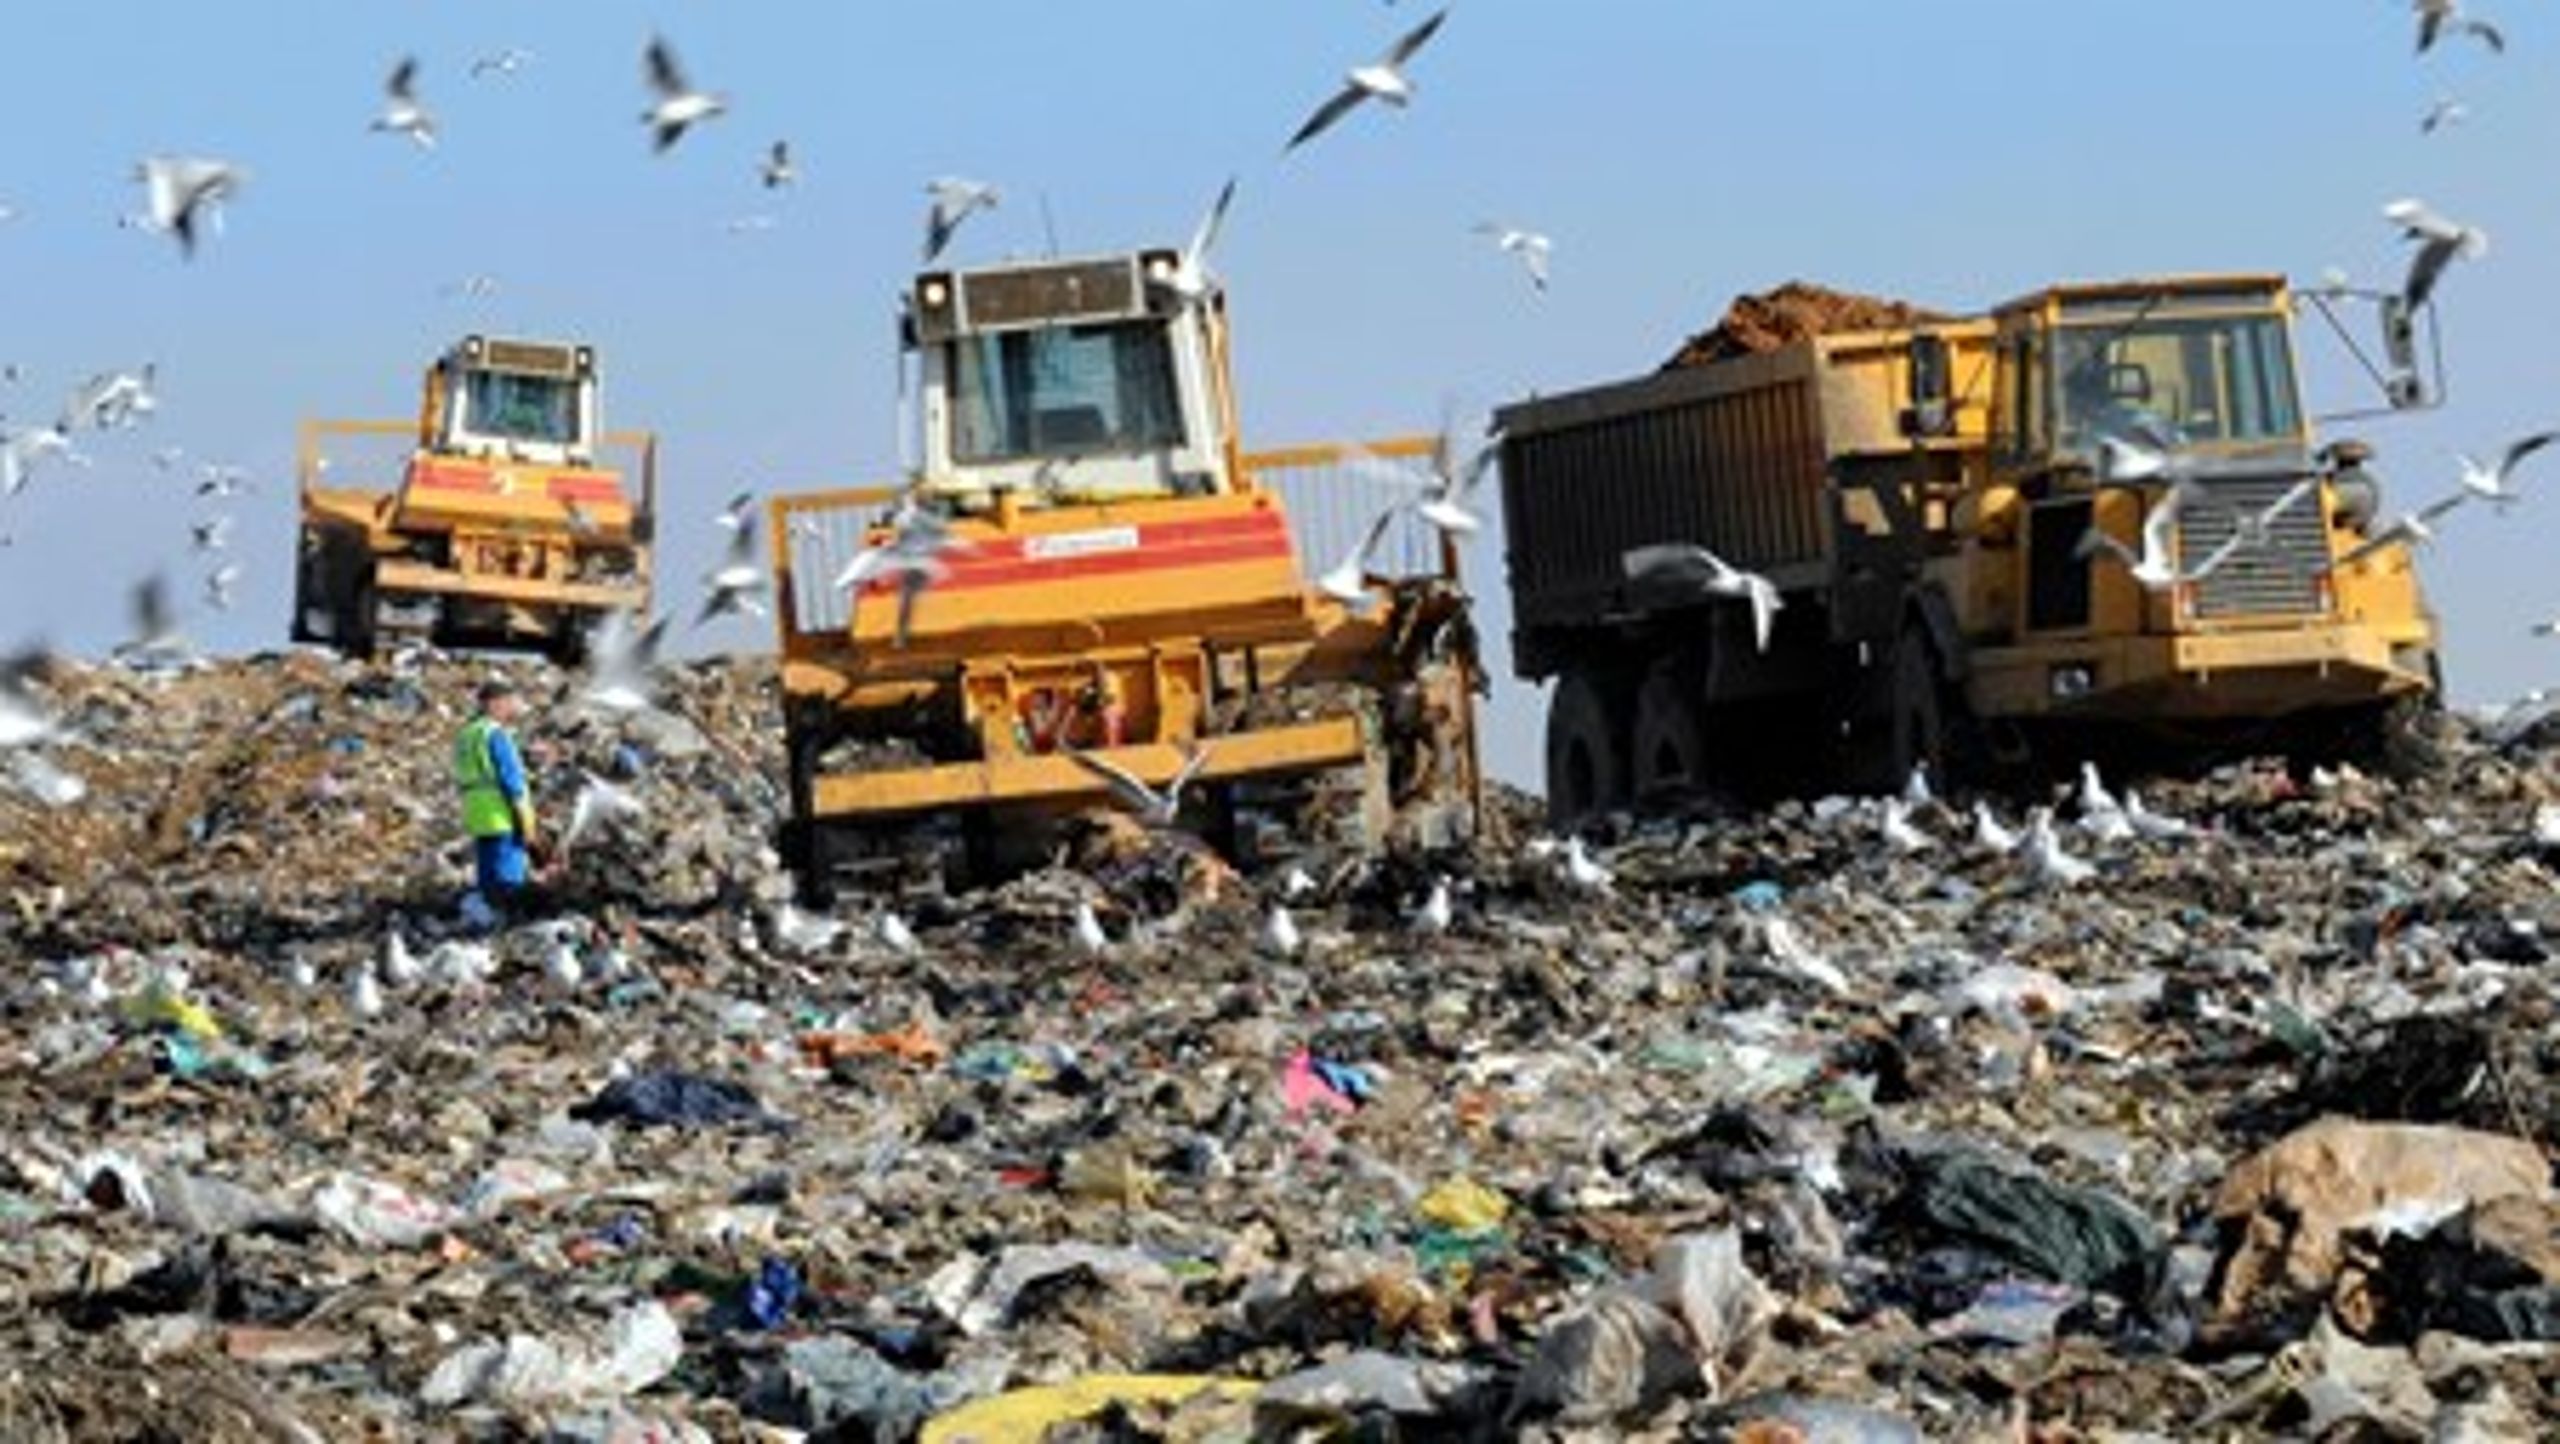 Automatisk sortering af affald ses af mange som en genvej til at øge genanvendelsen i samfundet. I Vejle Kommune er man dog frustreret over, at man ikke kan få lov at opføre et sorteringsanlæg, som håndterer affald fra både husholdninger og virksomheder.